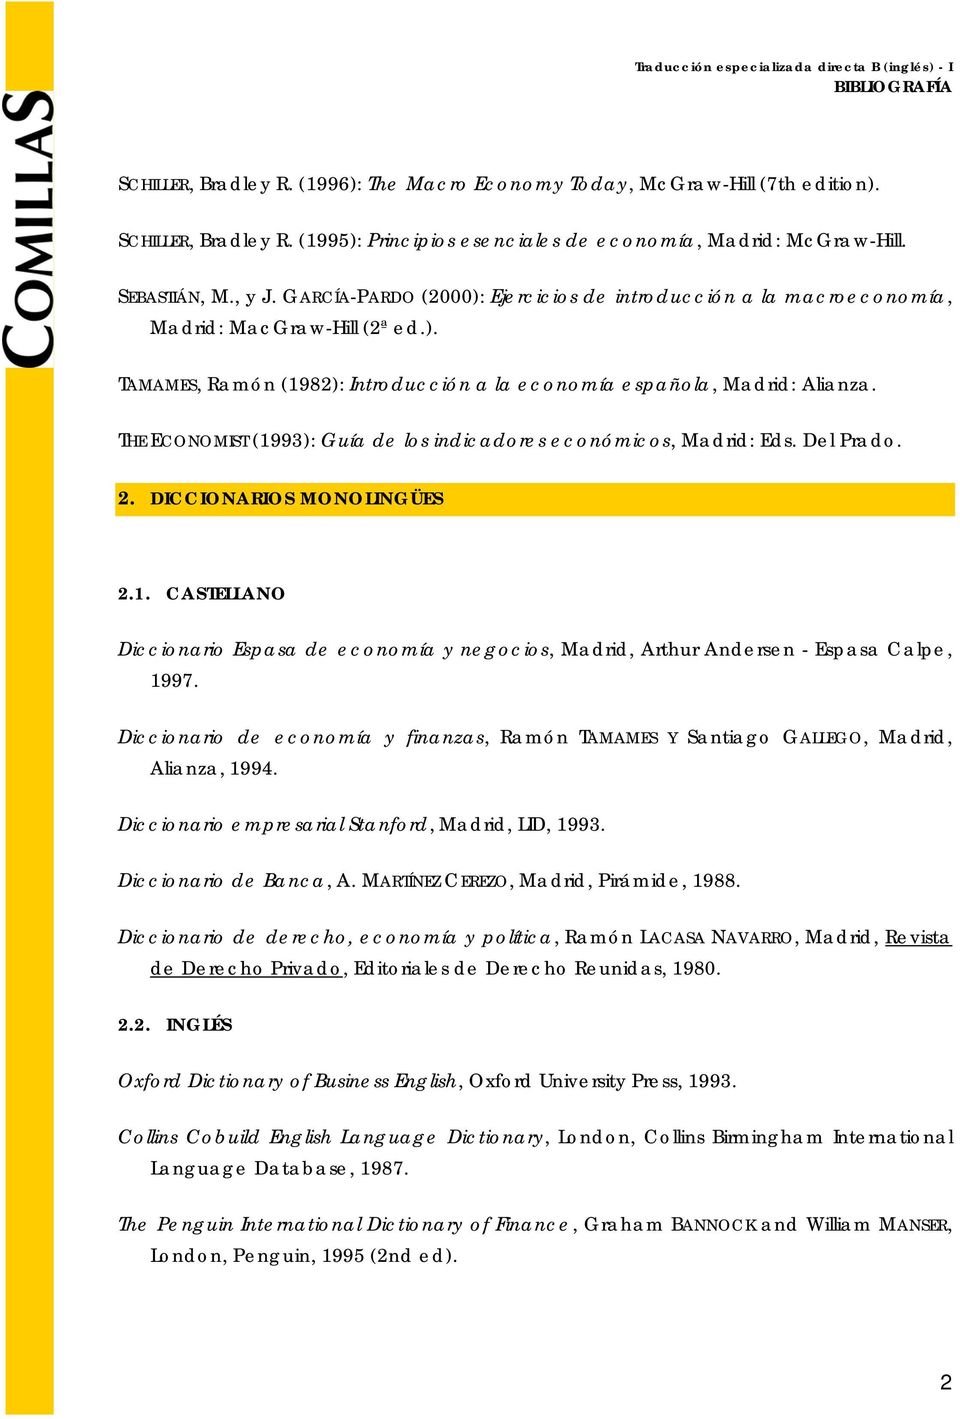 THE ECONOMIST (1993): Guía de los indicadores económicos, Madrid: Eds. Del Prado. 2. DICCIONARIOS MONOLINGÜES 2.1. CASTELLANO Diccionario Espasa de economía y negocios, Madrid, Arthur Andersen - Espasa Calpe, 1997.